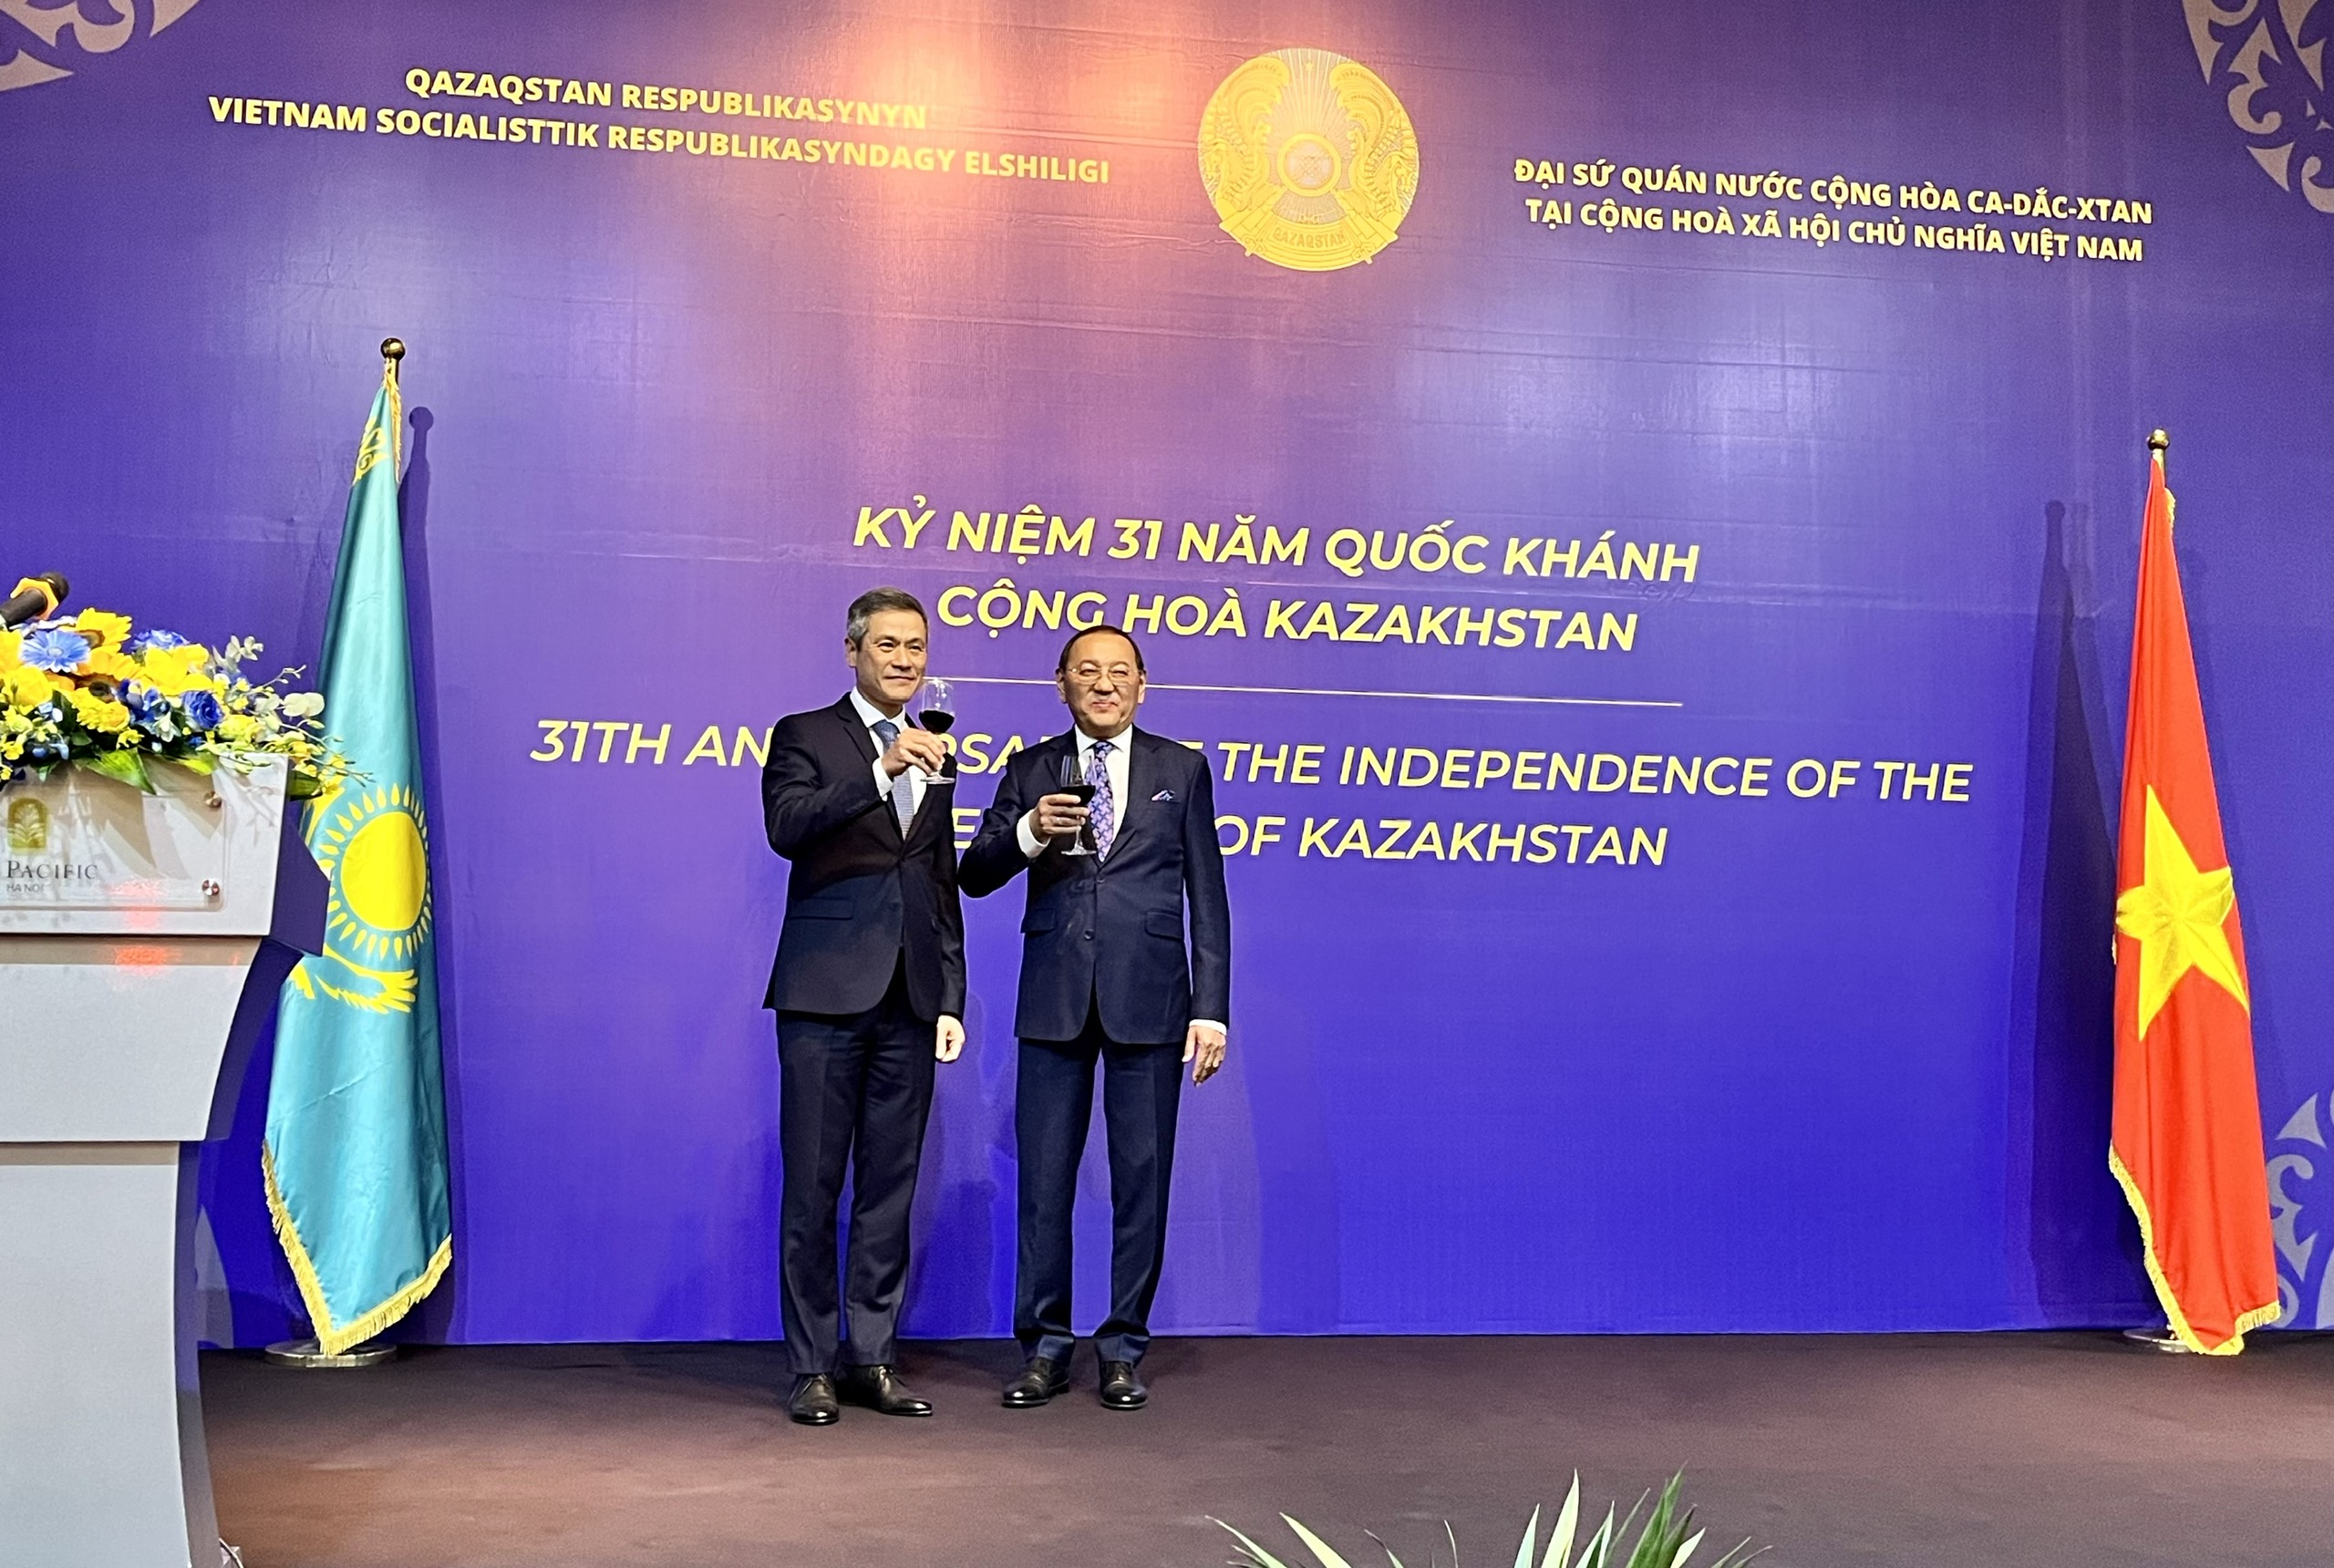 Quan hệ hữu nghị giữa Việt Nam và các nước trên thế giới ngày càng được củng cố và mở rộng, đem lại nhiều cơ hội hợp tác mới trong các lĩnh vực kinh tế, văn hóa, giáo dục... Việt Nam tự hào là một đồng minh tin cậy và đóng góp tích cực cho hòa bình và ổn định khu vực và toàn cầu.